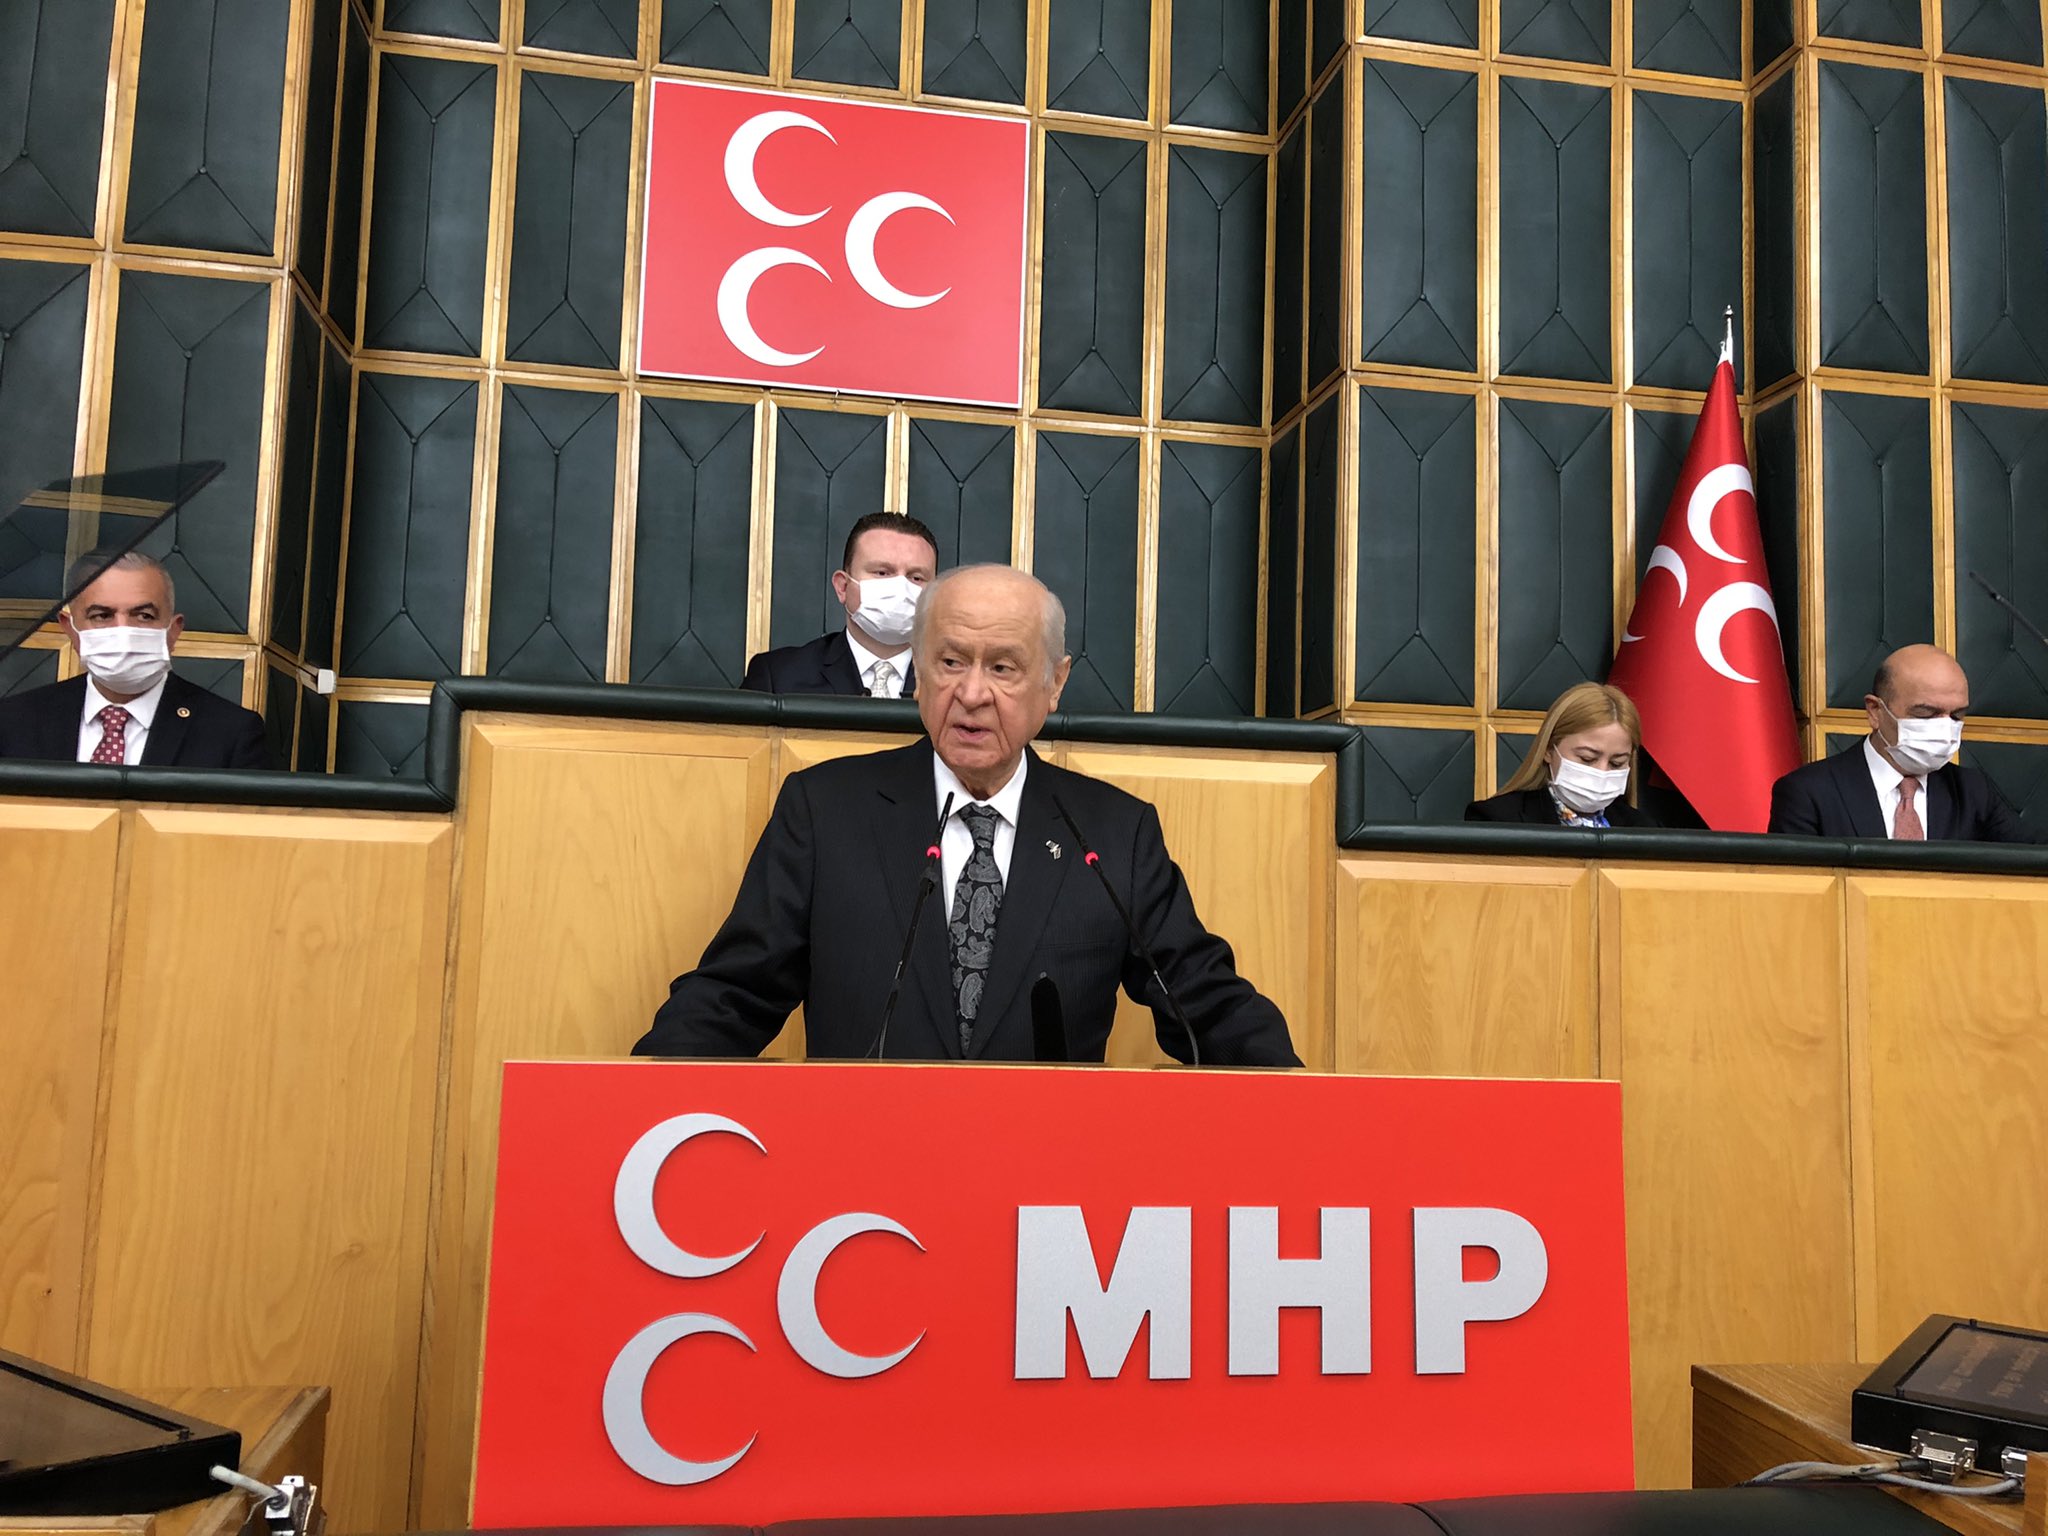 MHP lideri Bahçeli'den muhalefete zehir zemberek sözler: Cumhur İttifakı'nın adayı bellidir. Sizin çürük adayınız ne zaman ortaya çıkacak?